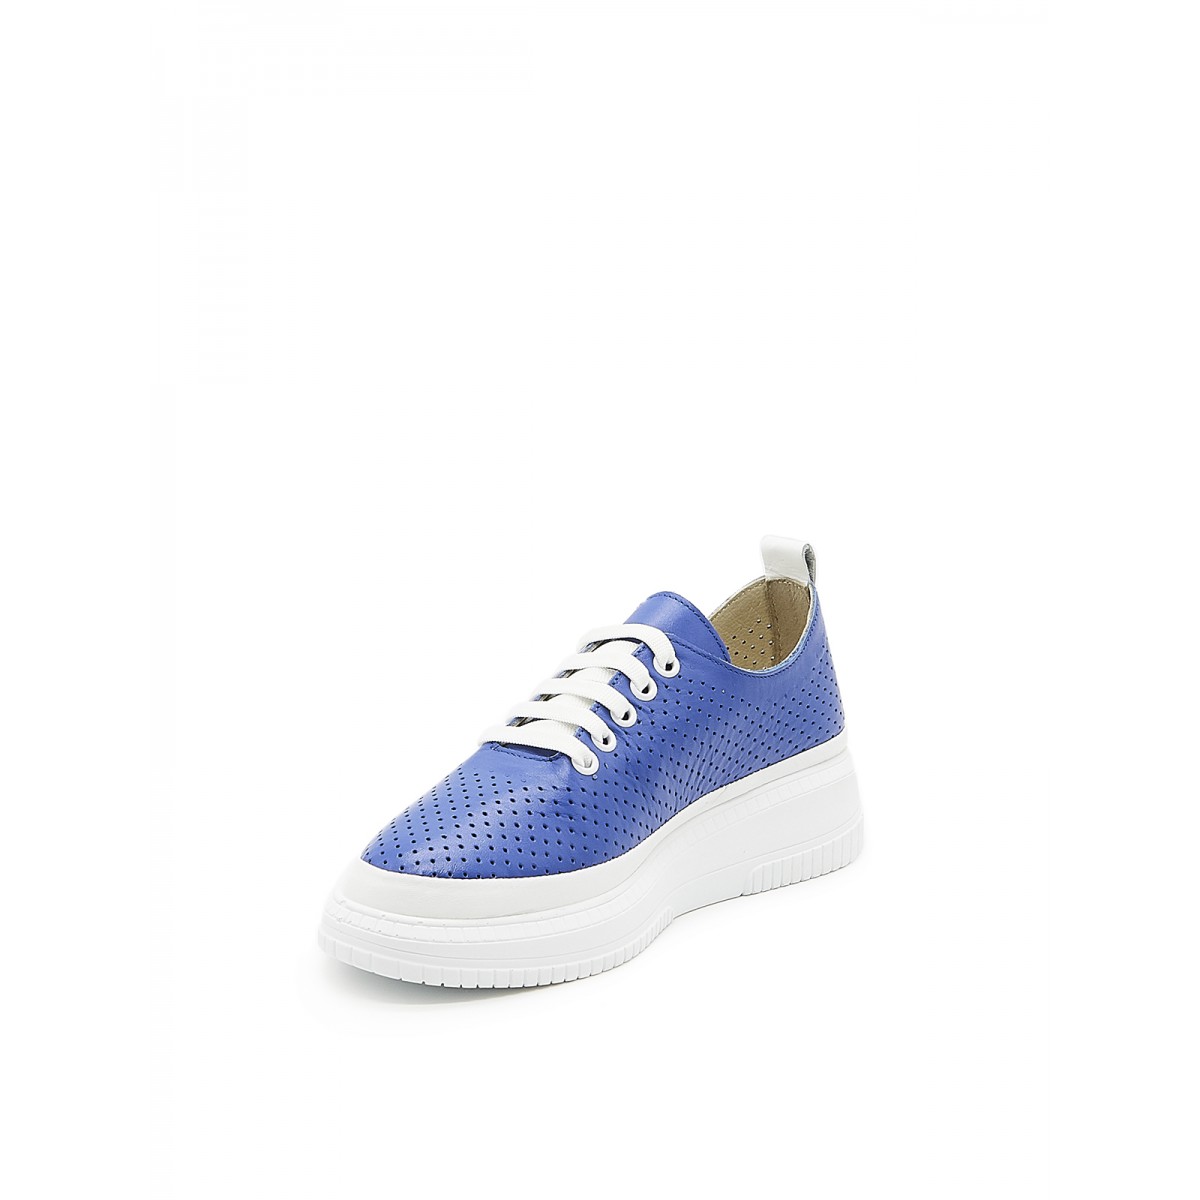  женские туфли весенние Dario Bruni  синий 